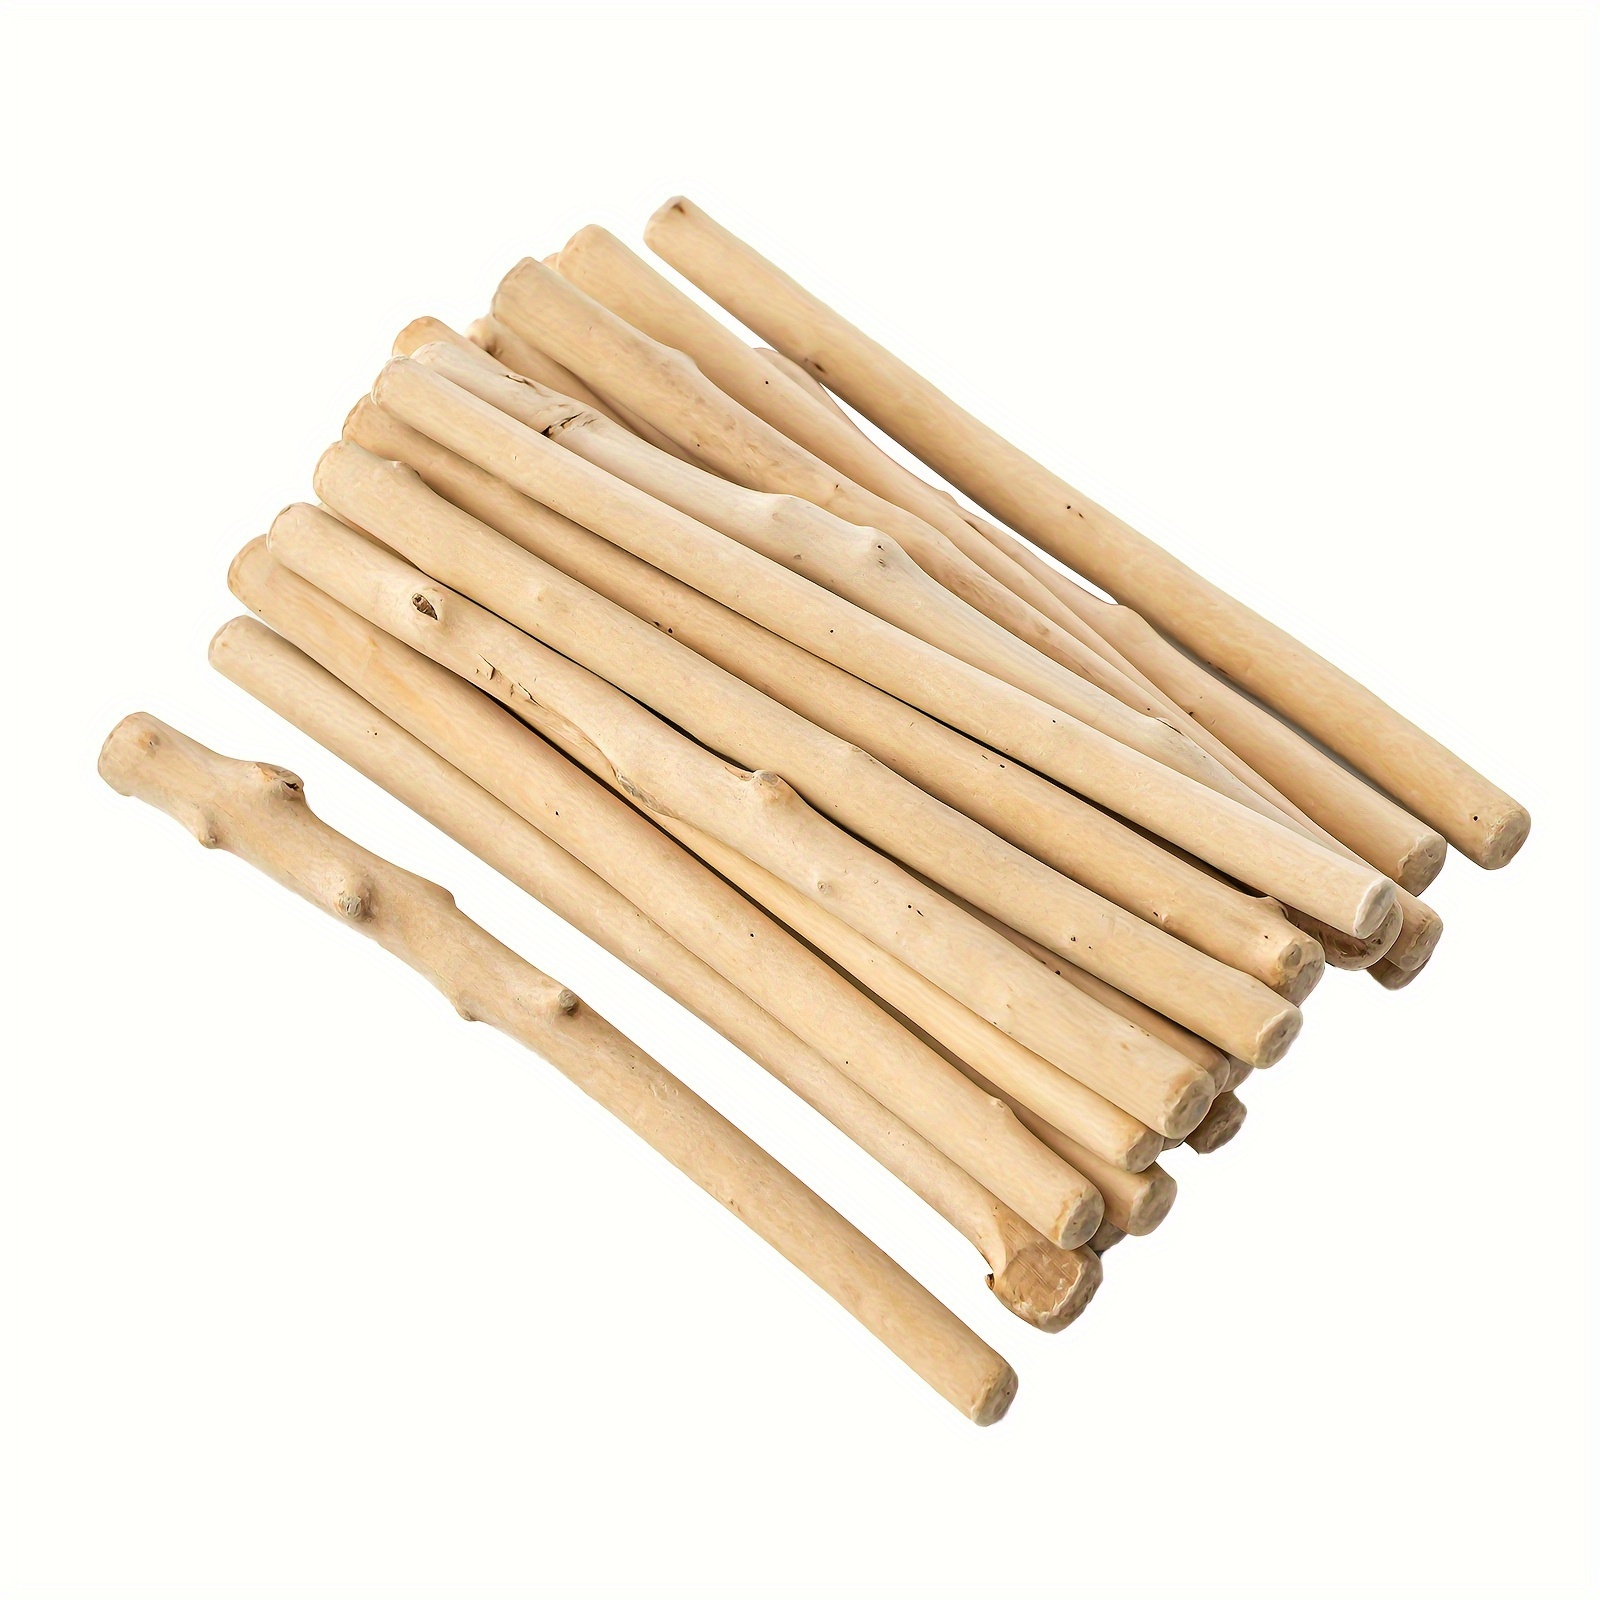  20 varillas de madera para manualidades, palos de madera  natural sin terminar de 1/4 pulgadas / 2/5 pulgadas x 12 pulgadas : Arte y  Manualidades